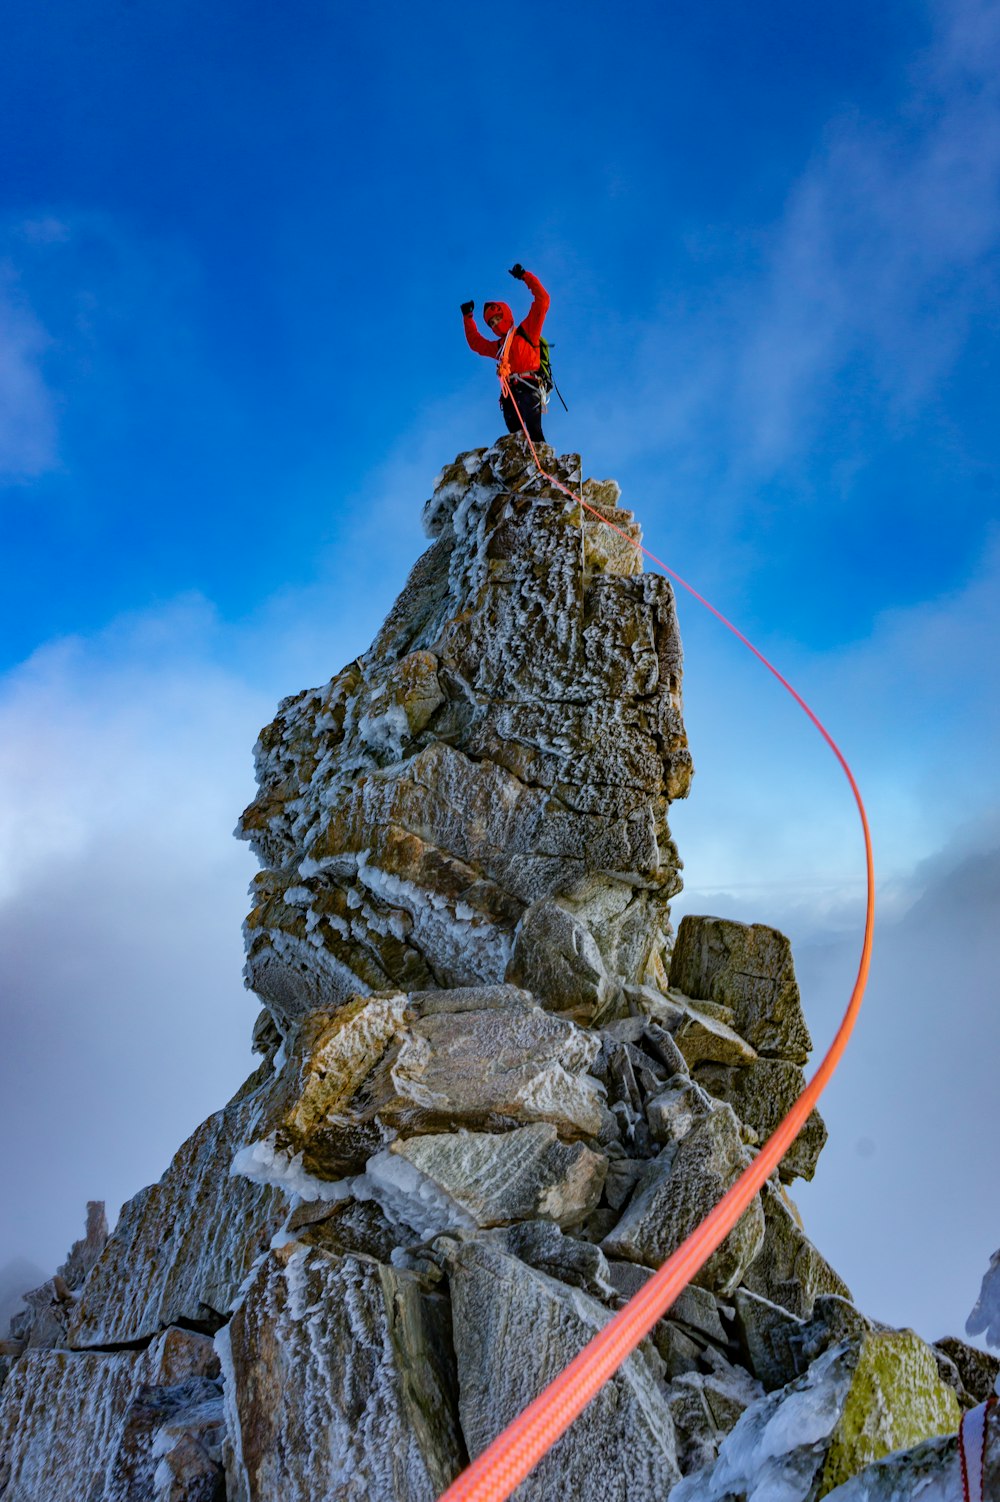 빨간 재킷과 검은 바지를 입은 사람이 낮 동안 푸른 하늘 아래 바위 산에서 점프